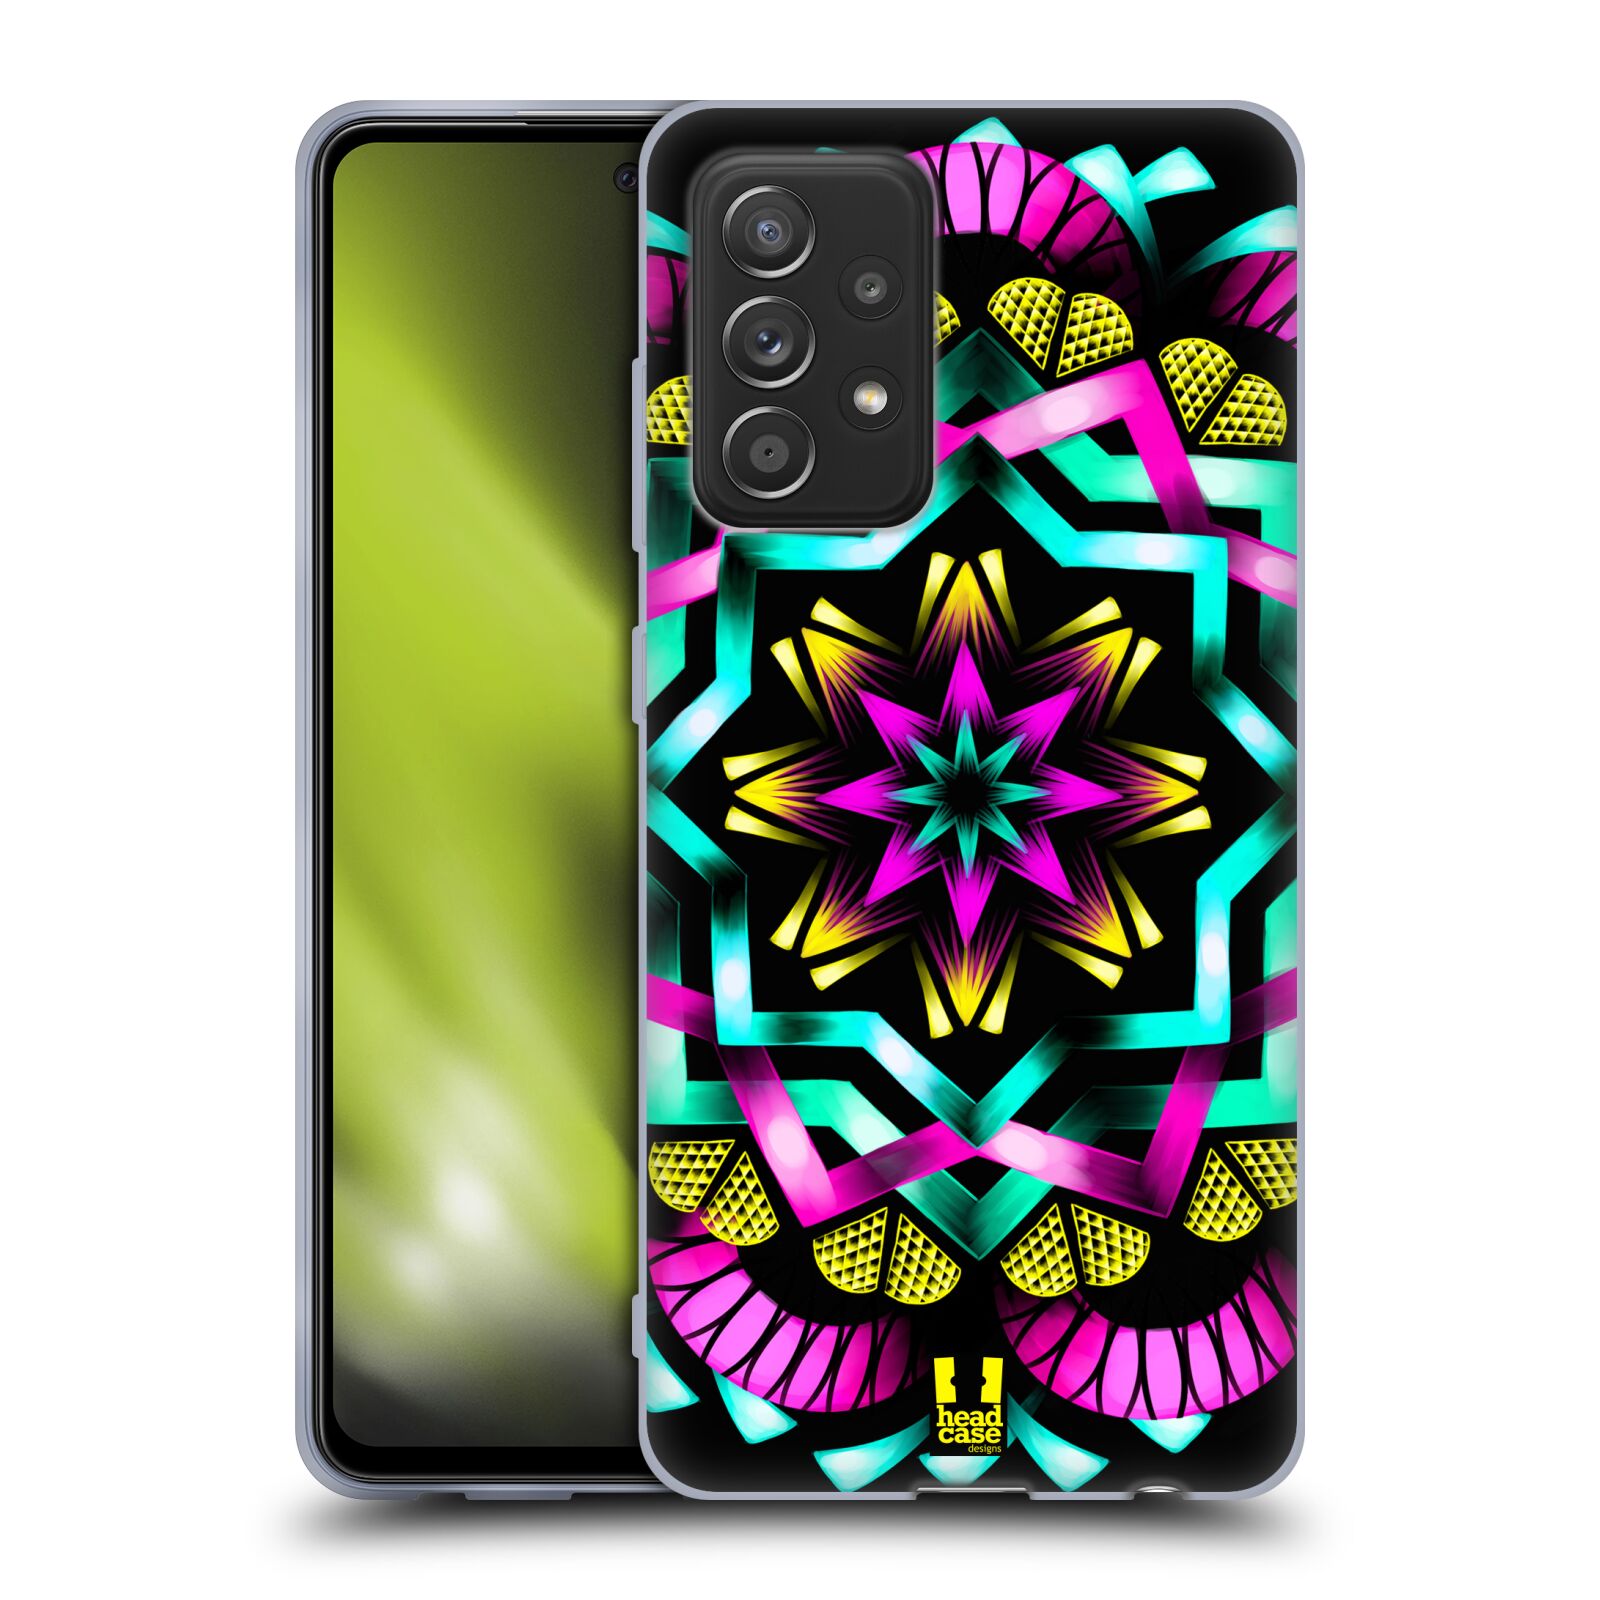 Plastový obal HEAD CASE na mobil Samsung Galaxy A52 / A52 5G / A52s 5G vzor Indie Mandala kaleidoskop barevný vzor SLUNCE